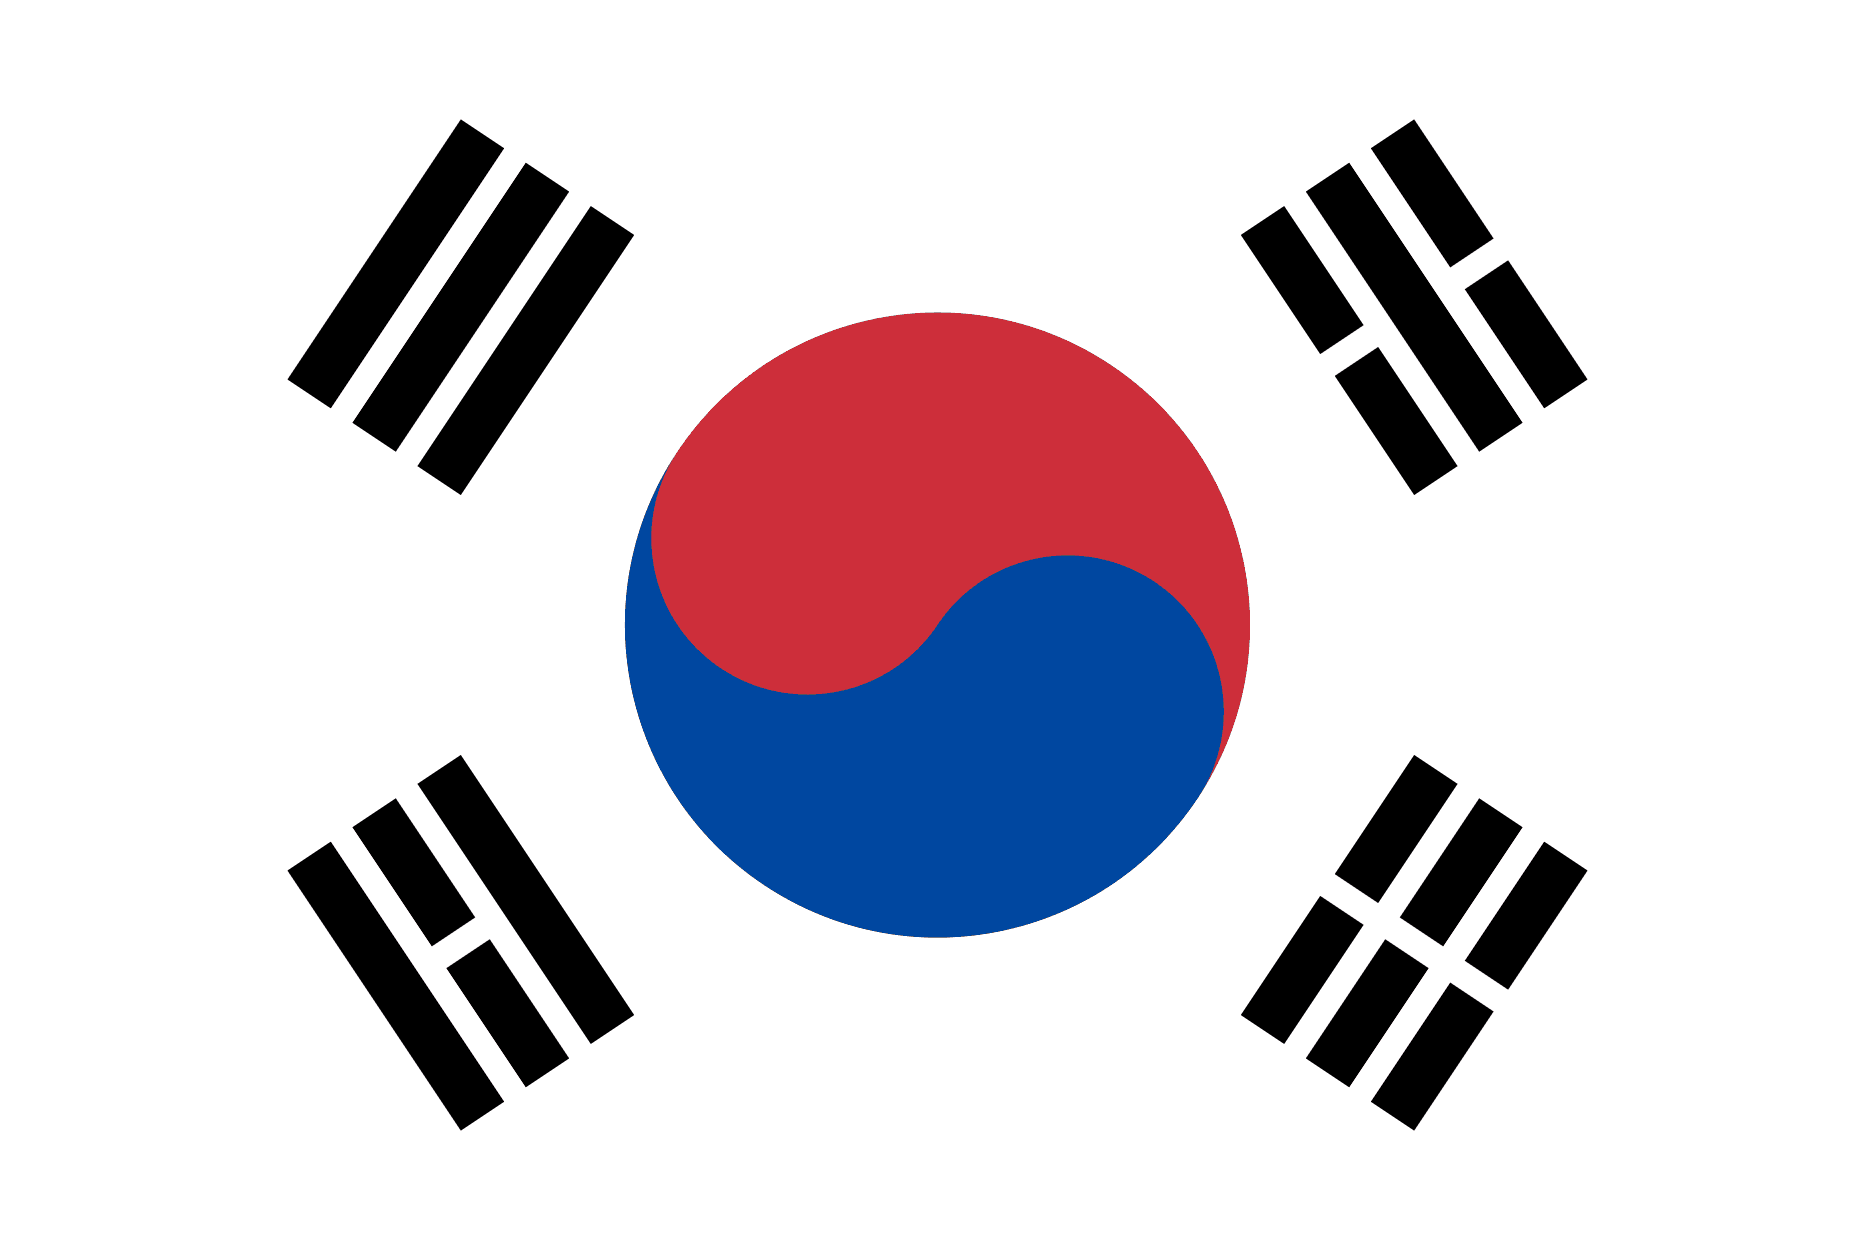 South Korea U16